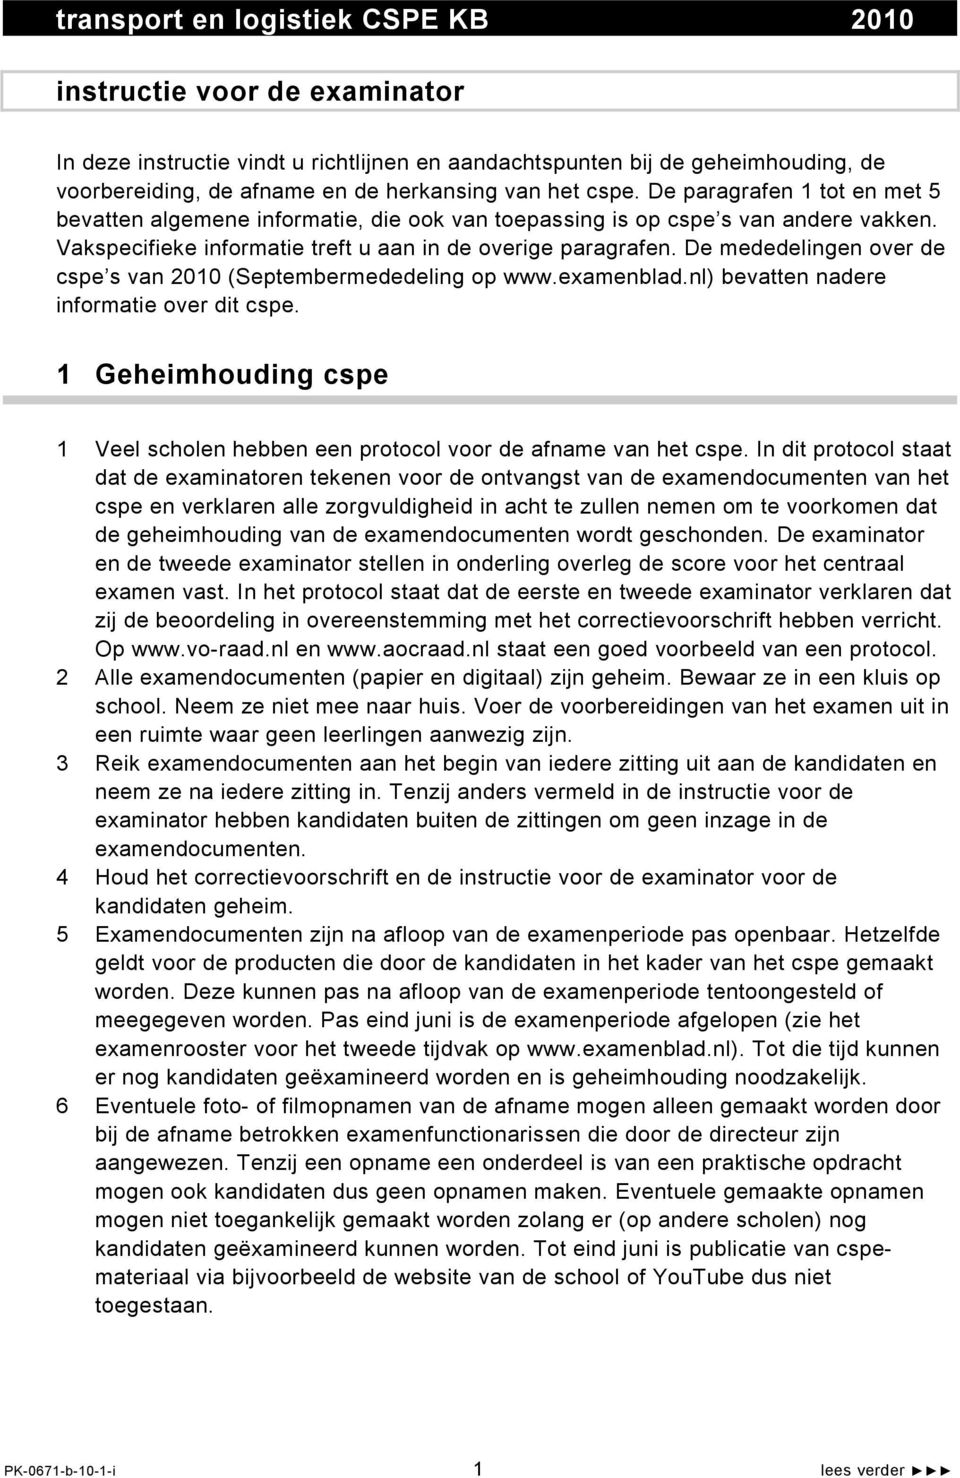 De mededelingen over de cspe s van 2010 (Septembermededeling op www.examenblad.nl) bevatten nadere informatie over dit cspe.